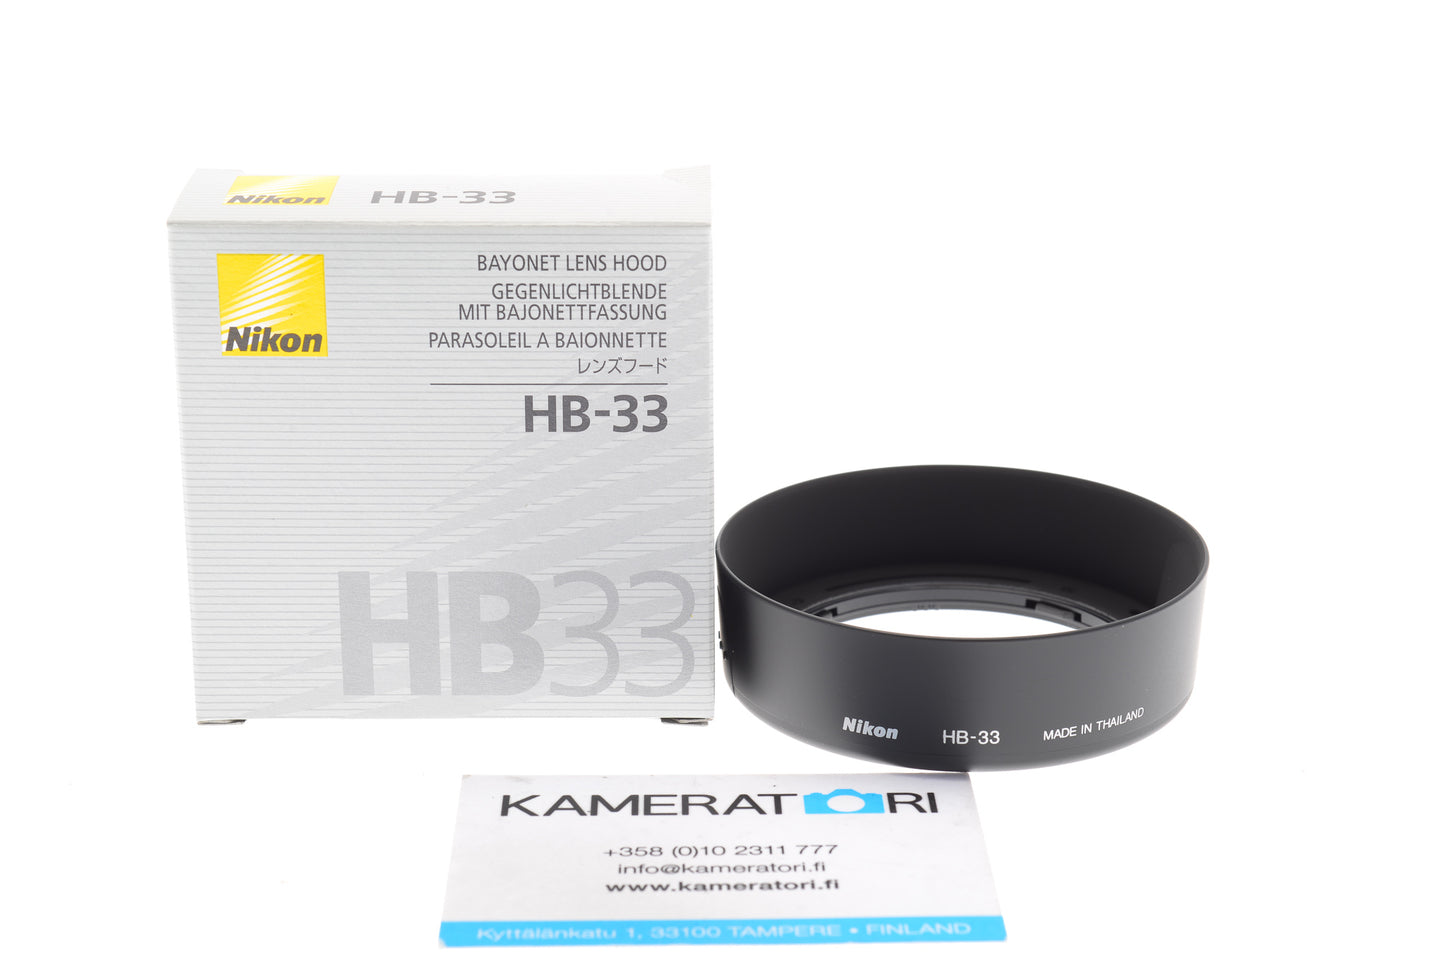 Nikon HB-33 Lens Hood for 18-55mm F3.5-5.6 G AF-S Lenses